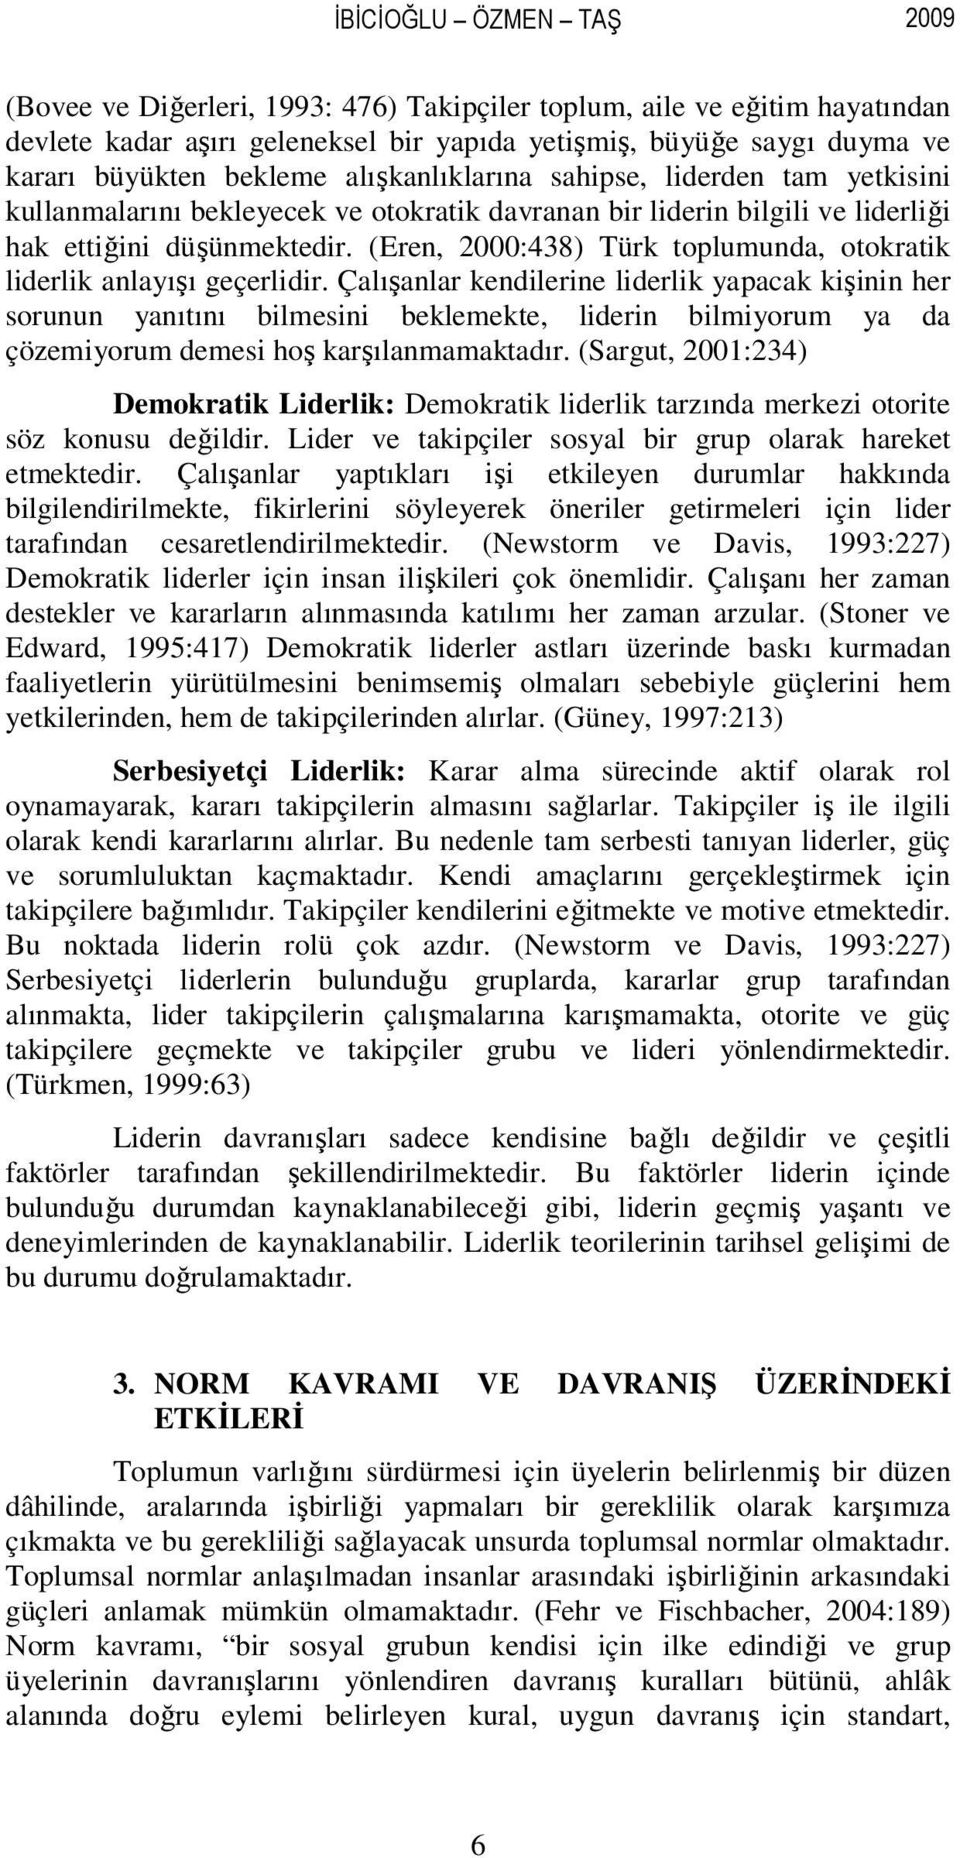 (Eren, 2000:438) Türk toplumunda, otokratik liderlik anlayışı geçerlidir.